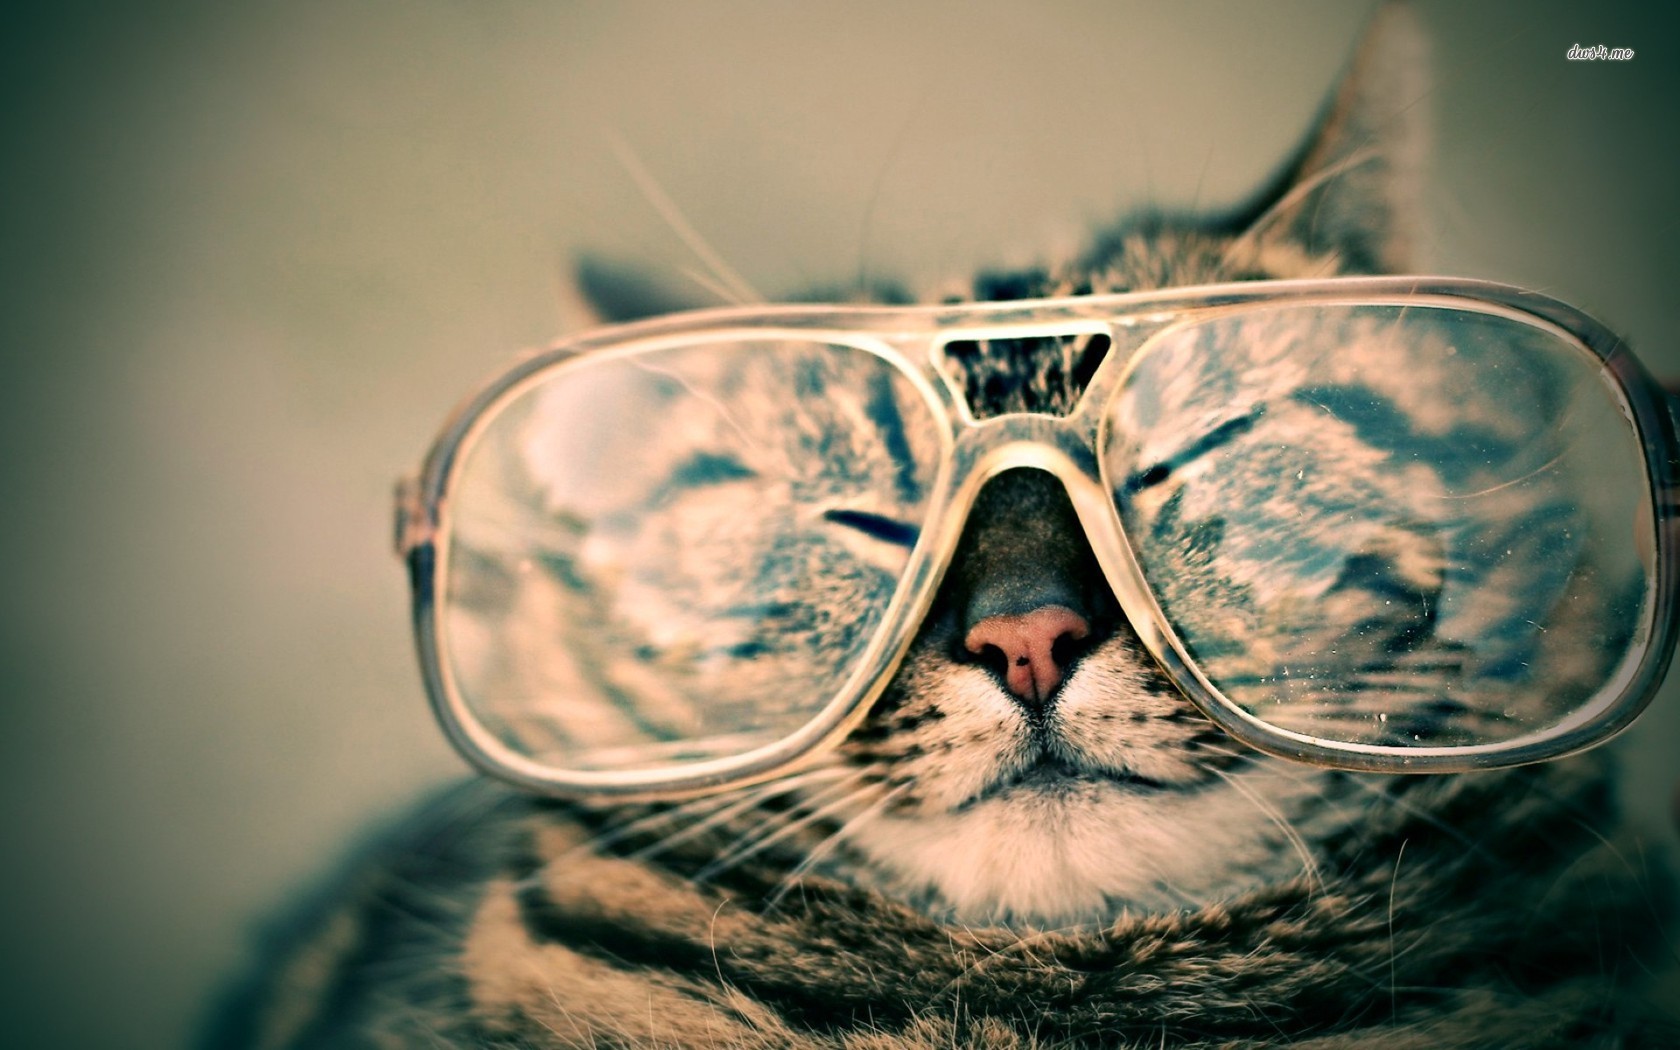 [41+] Cat with Sunglasses Wallpaper | WallpaperSafari.com